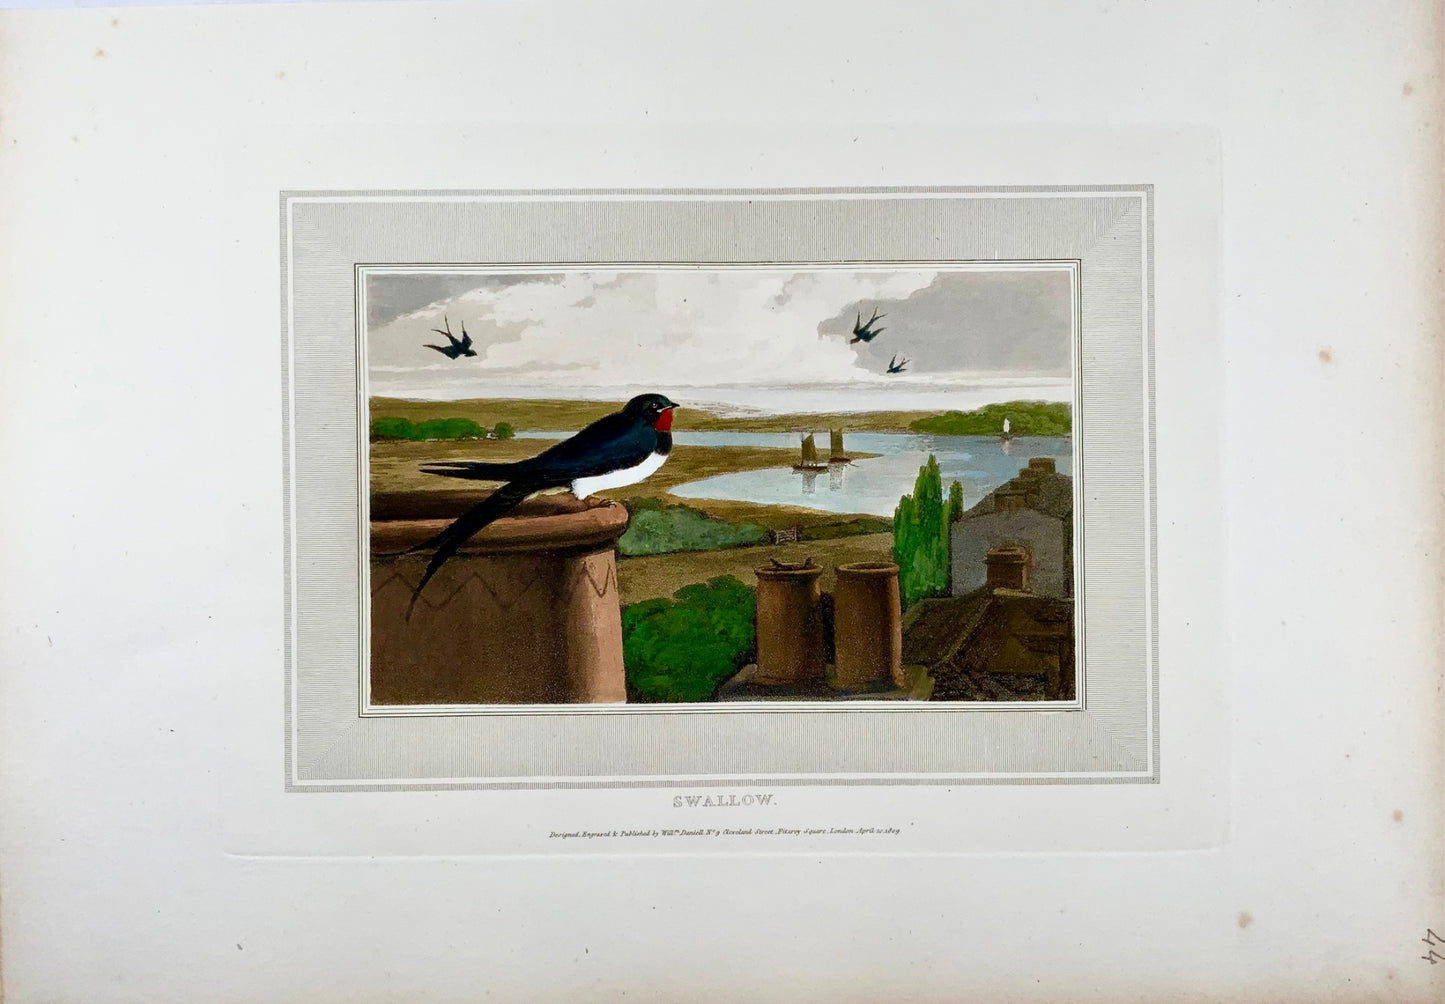 1807 William Daniell, Hirondelle, ornithologie, aquatinte coloriée à la main